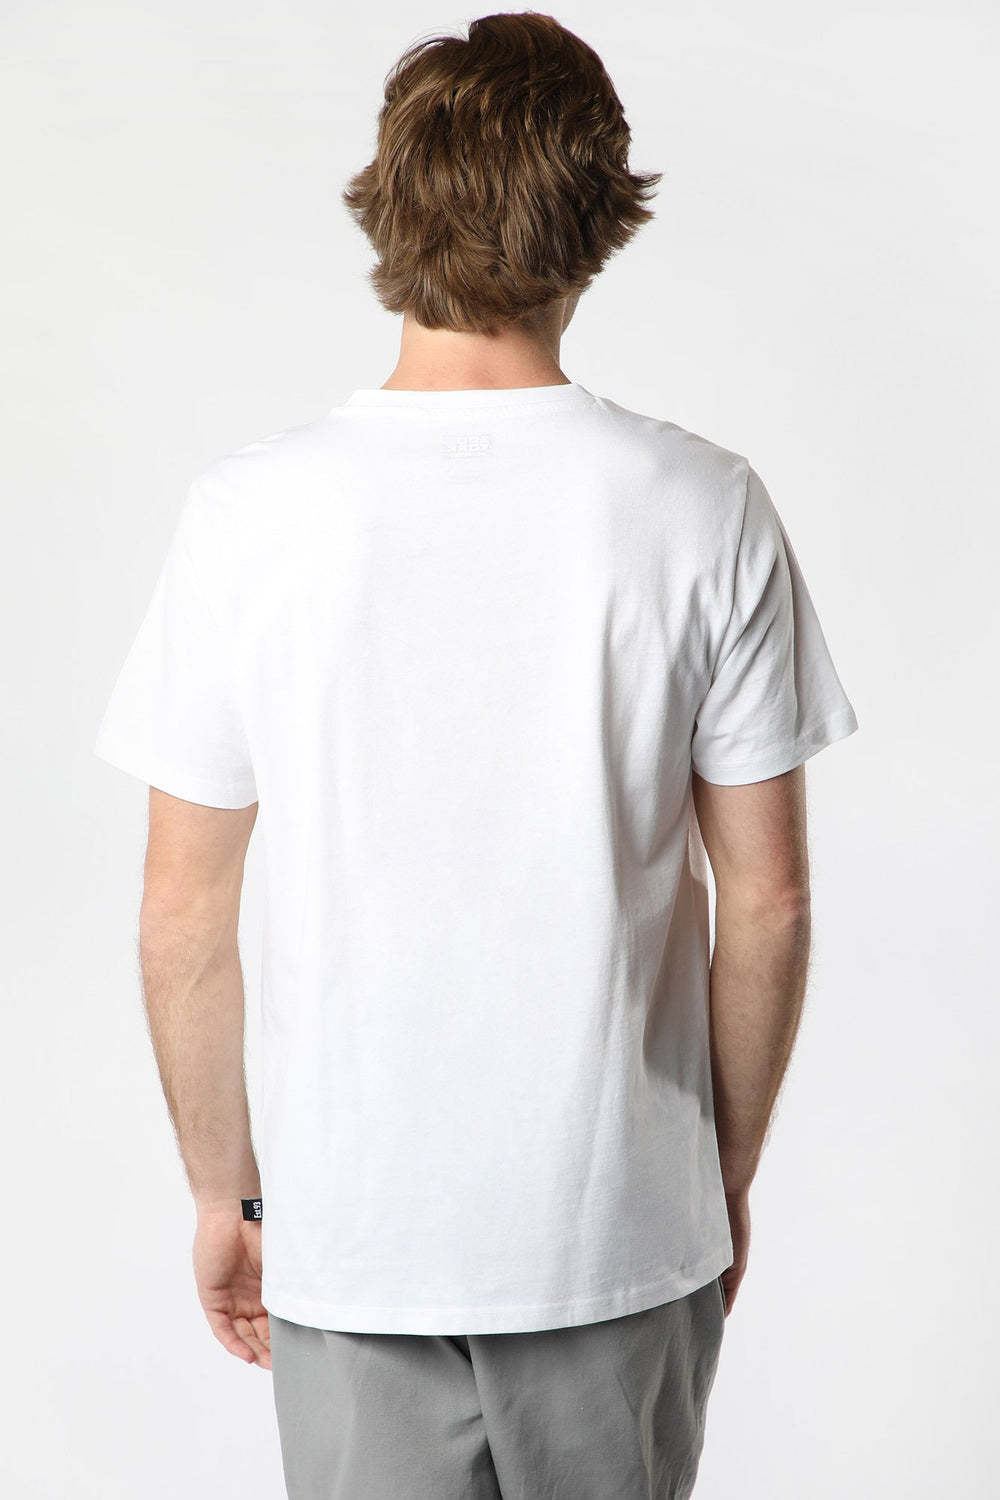 T-Shirt Imprimé Zoomart Zoo York Homme Blanc